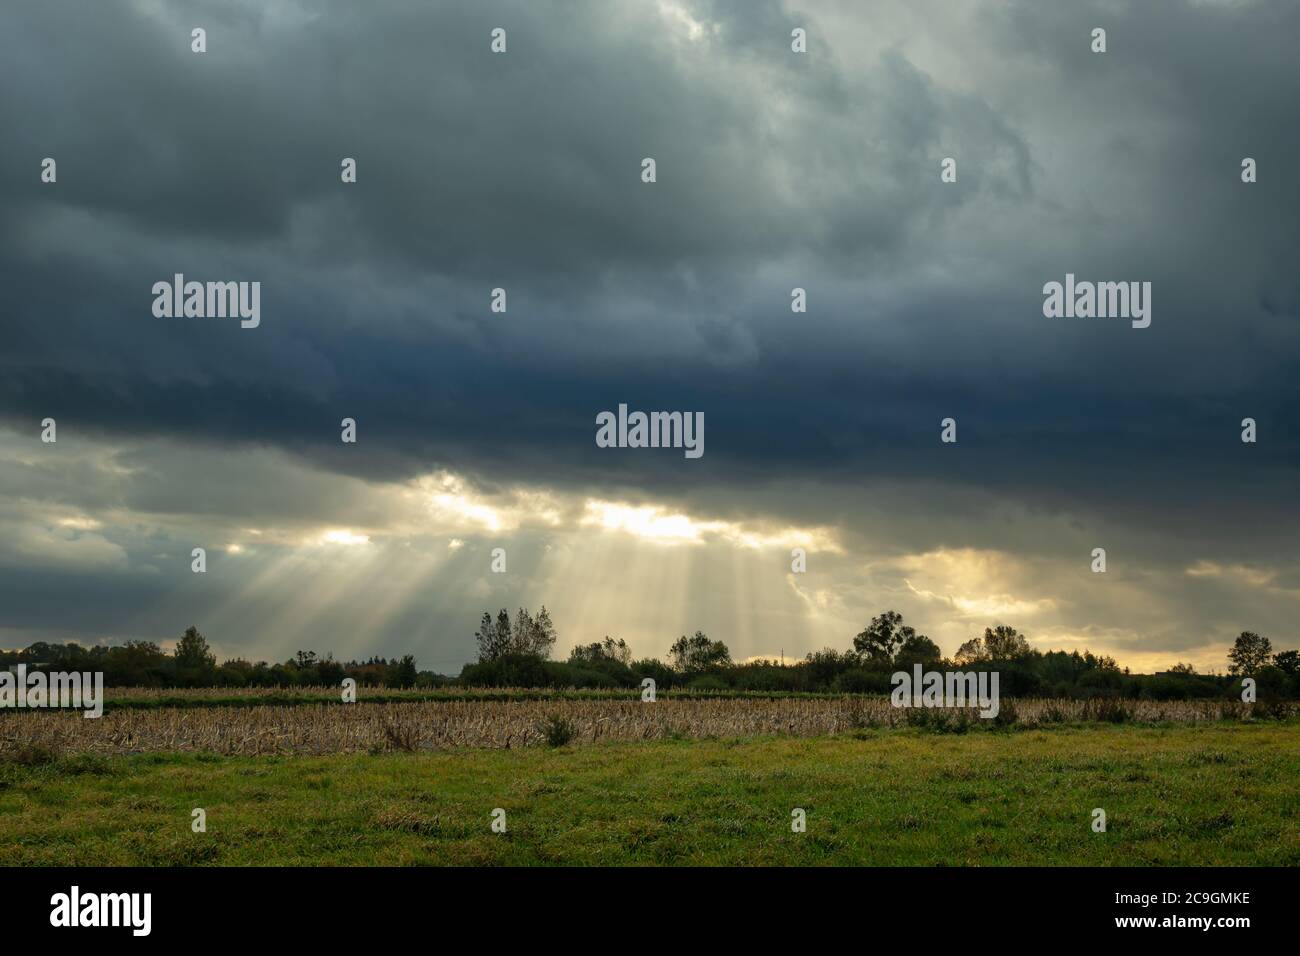 Nube oscura y sol, campo verde, vista de verano por la noche Foto de stock